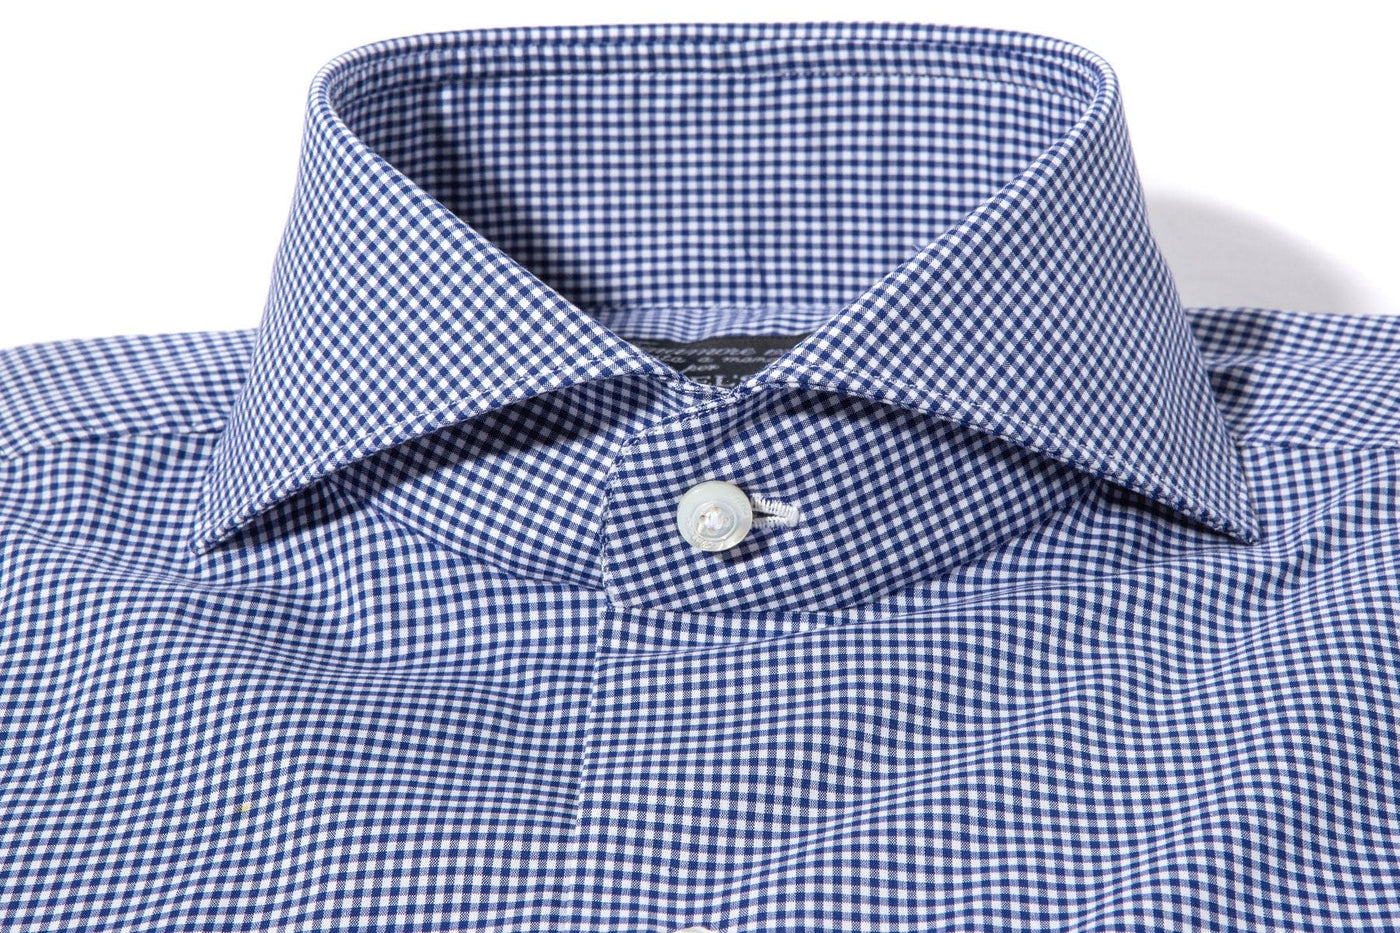 Petzen Small Checked Cotton Shirt In Blue - AXEL'S